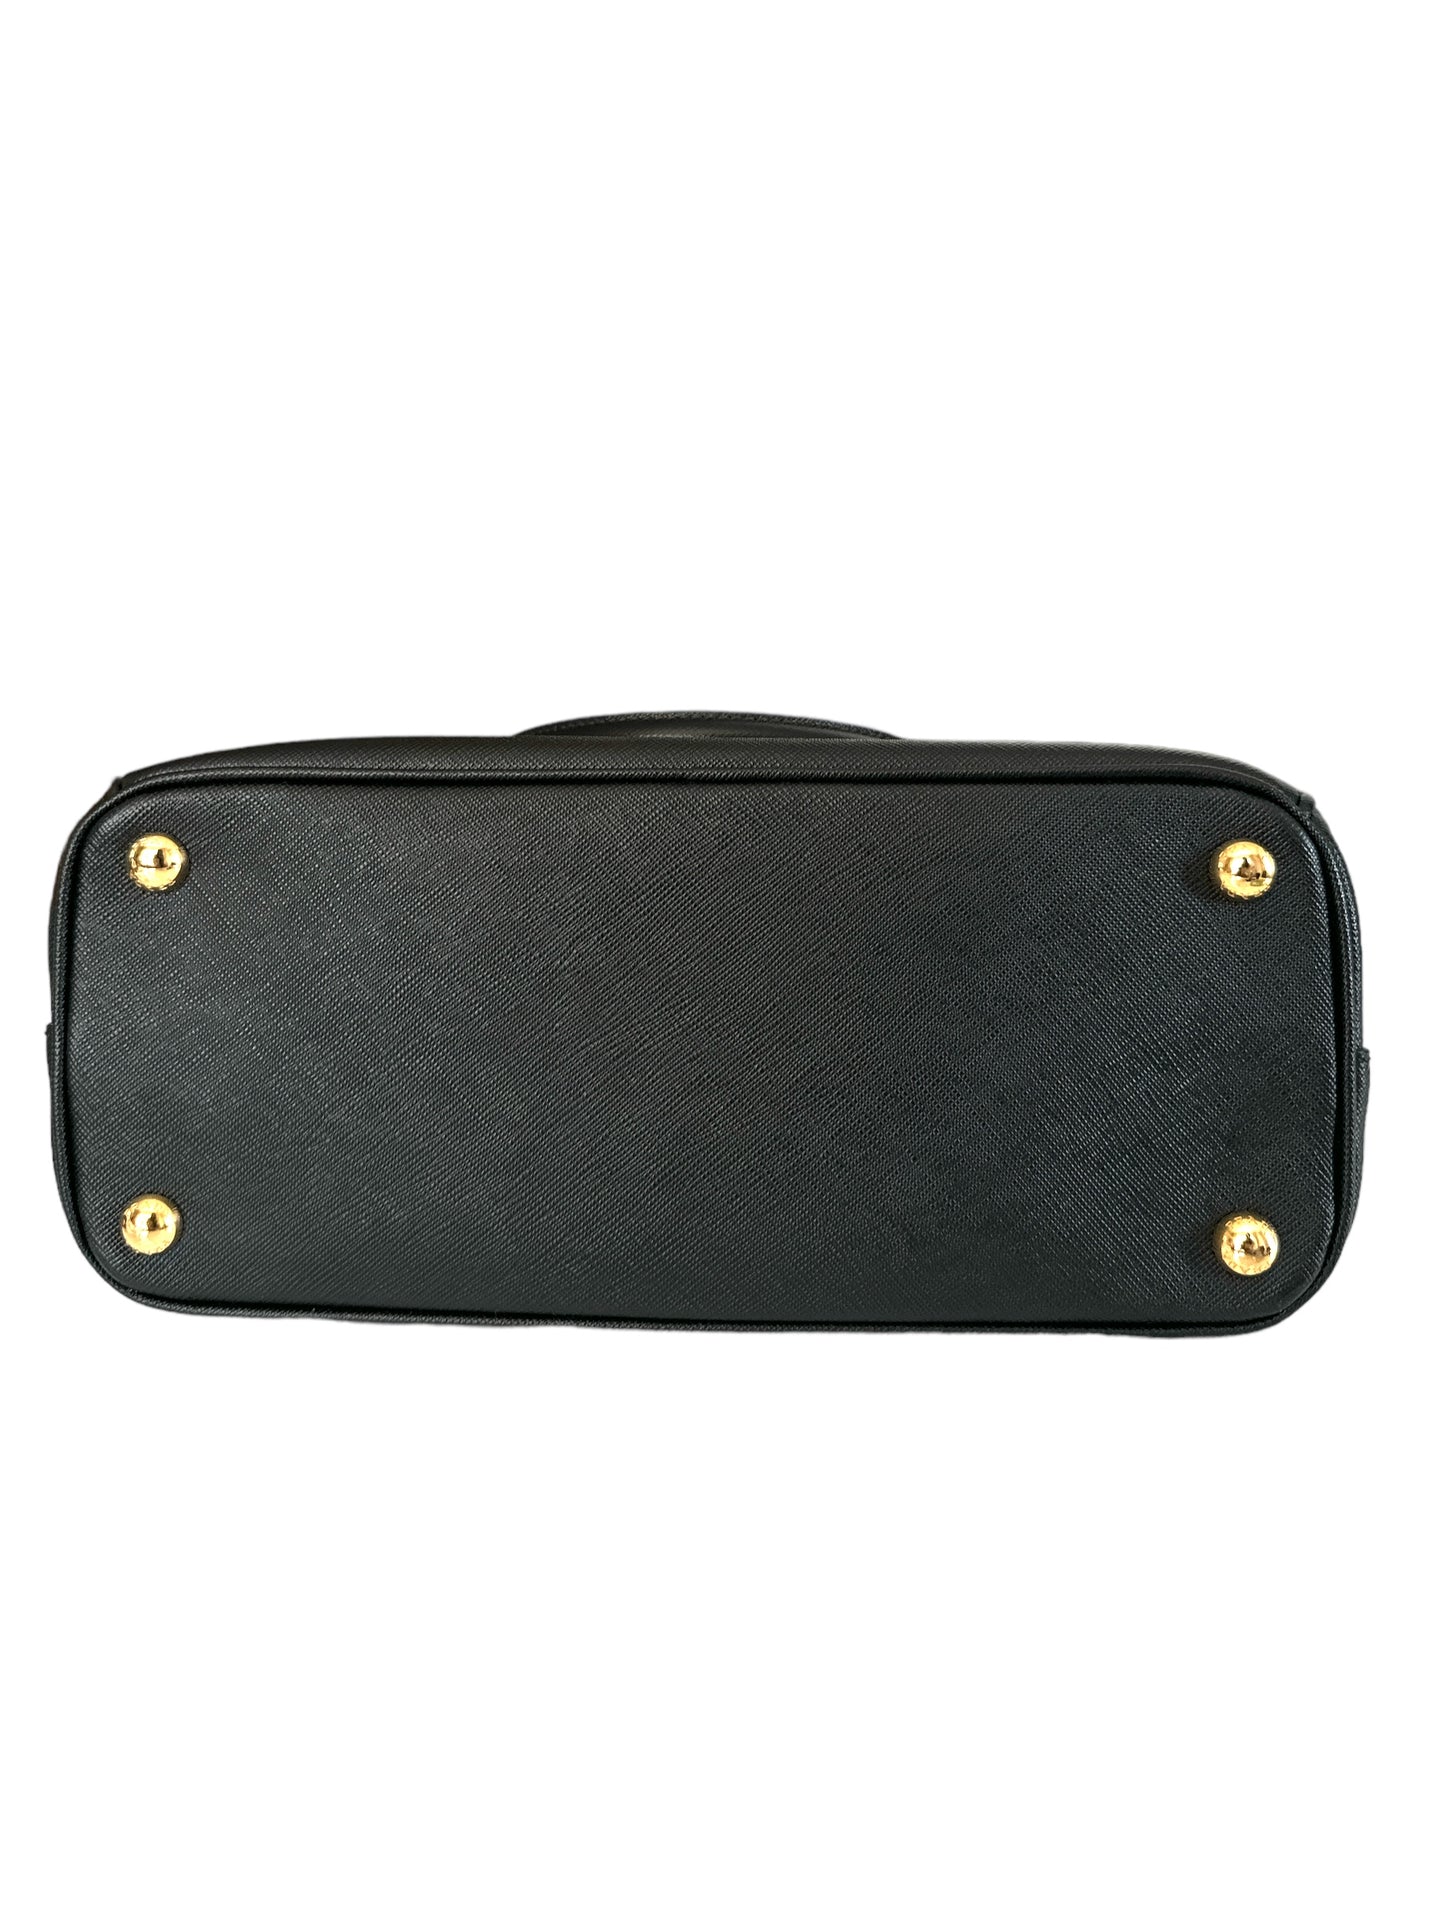 Prada Medium Galleria Black Saffiano leather bag